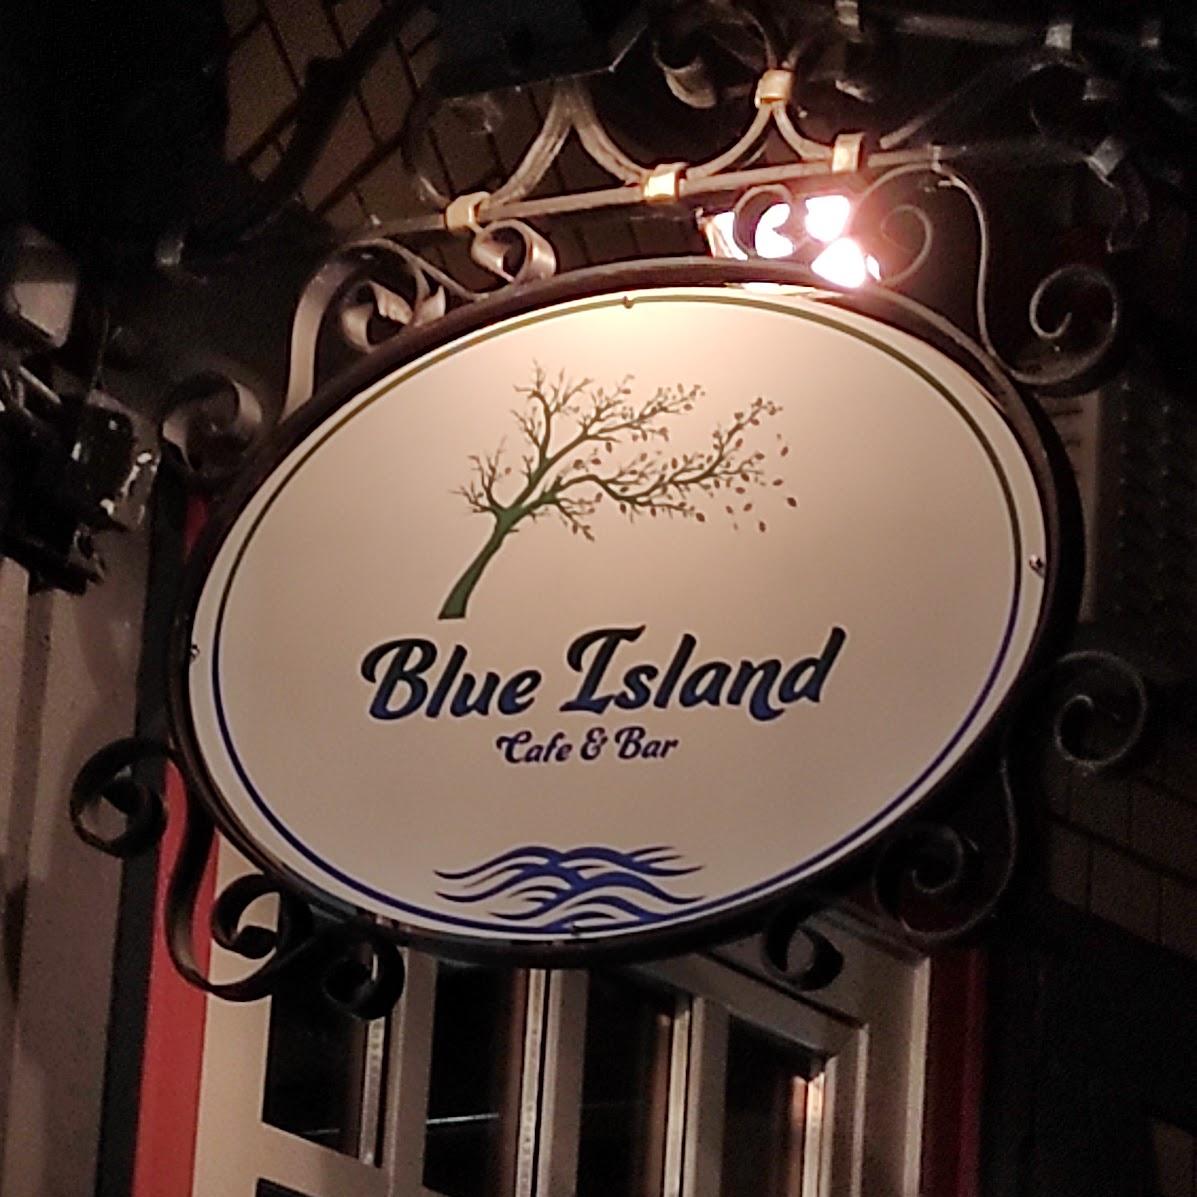 Restaurant "Blue Island" in Hann. Münden